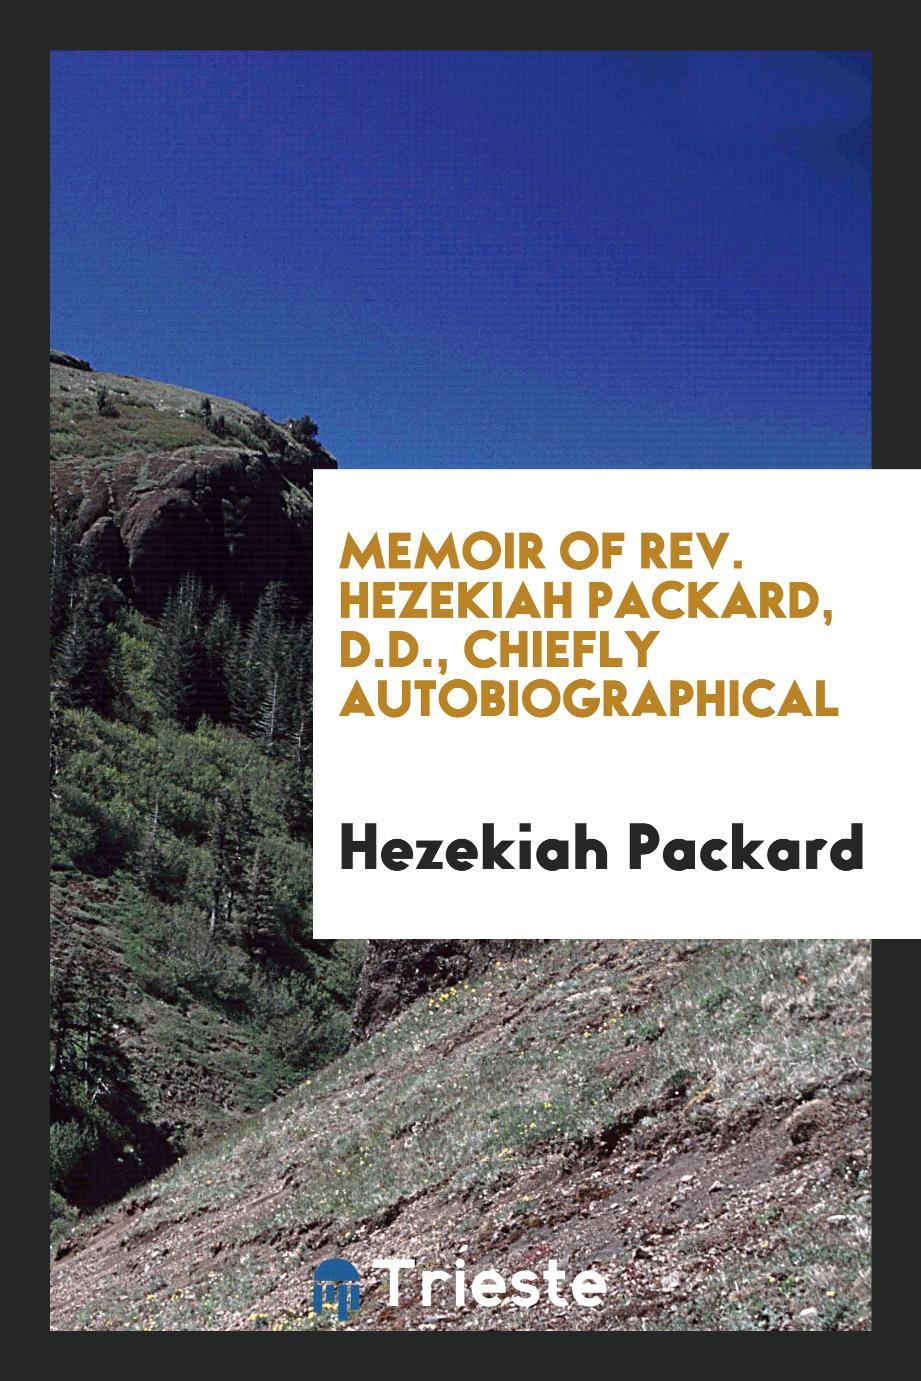 Memoir of Rev. Hezekiah Packard, D.D., Chiefly autobiographical